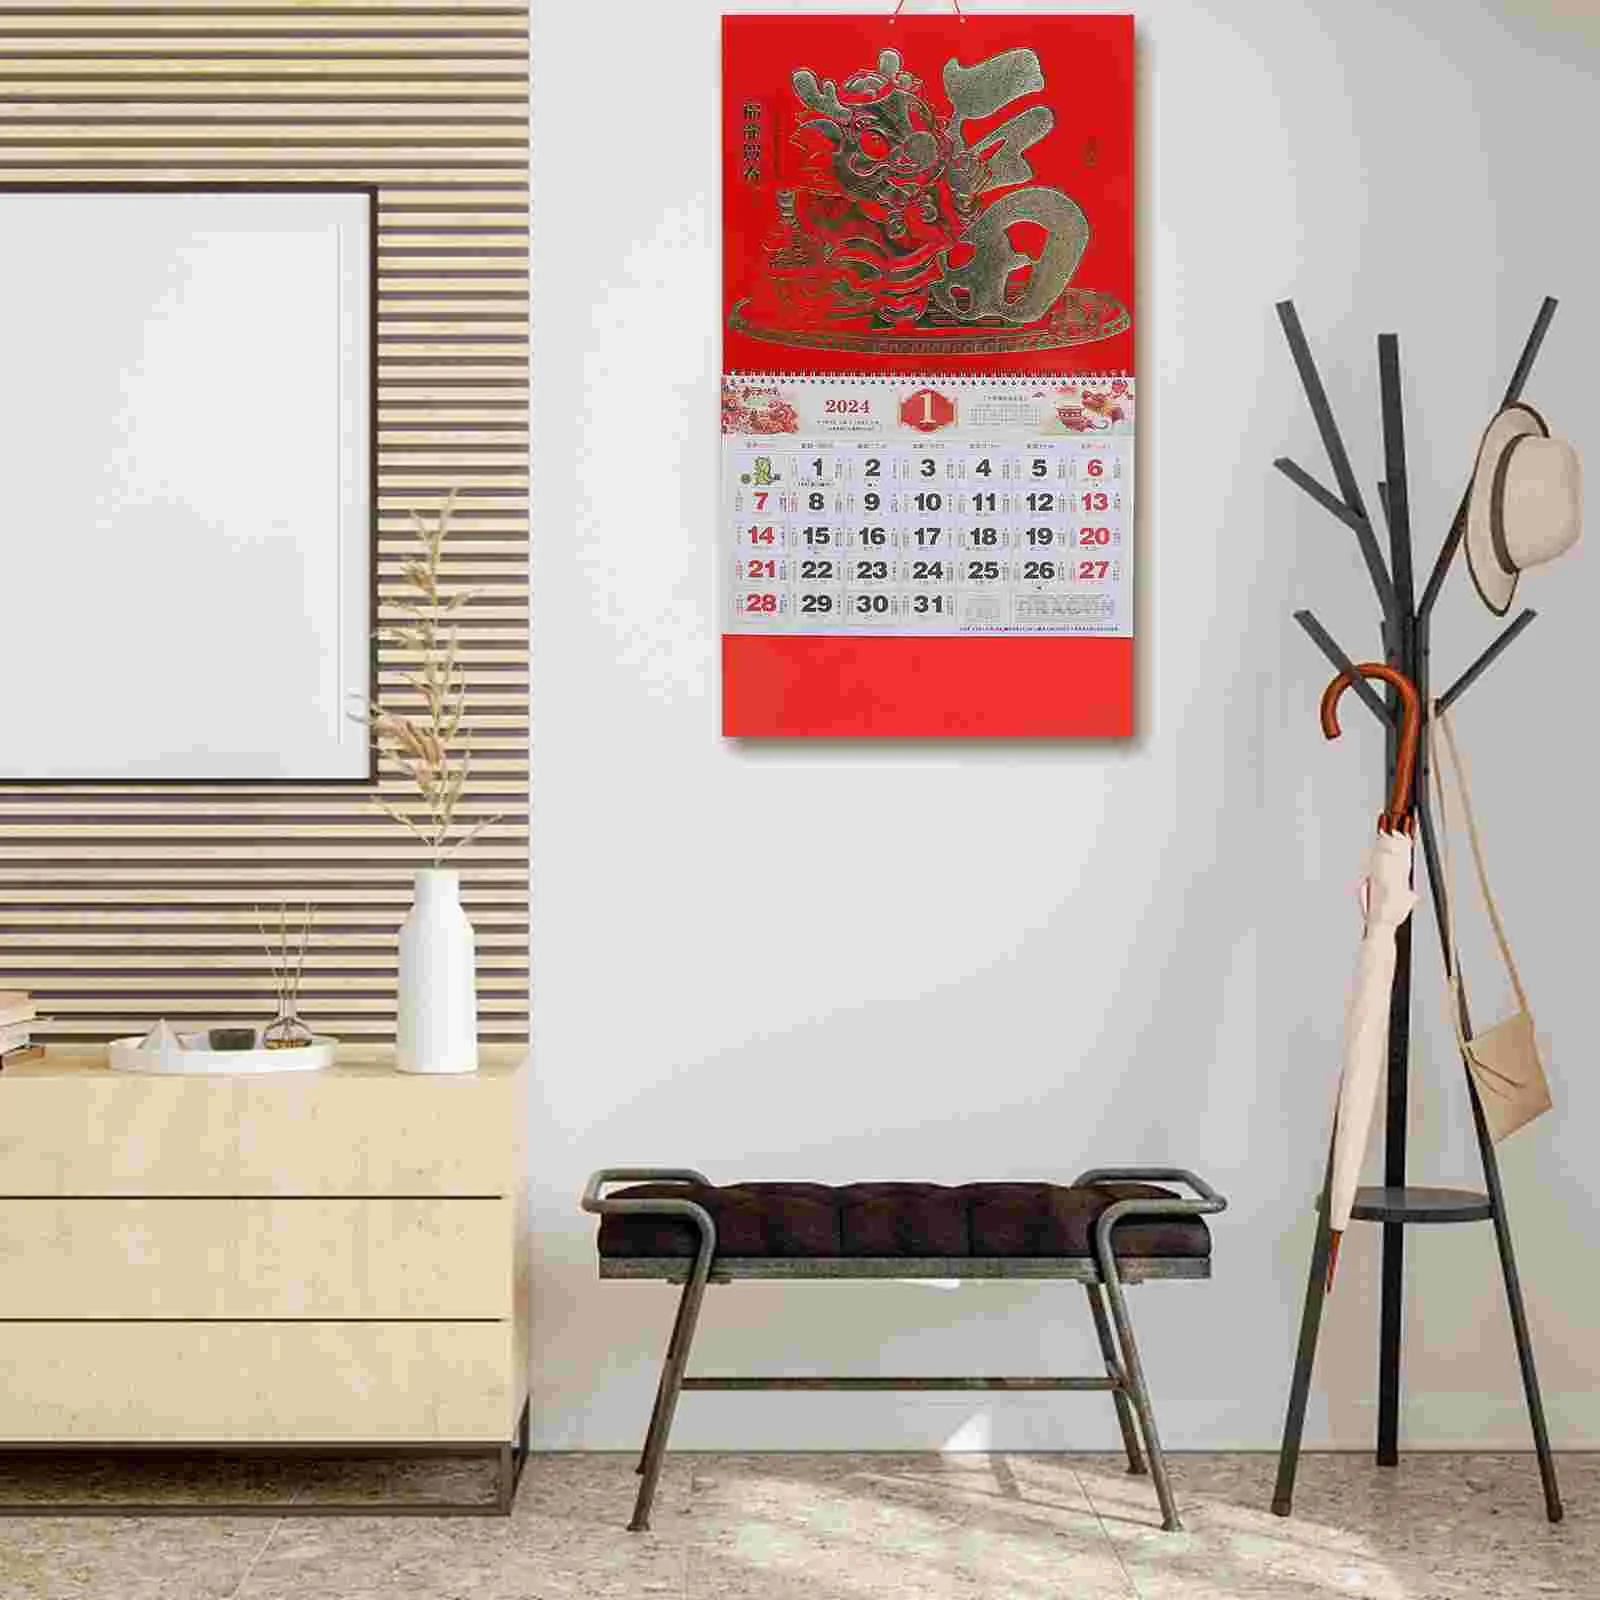 

Декоративный подвесной календарь в китайском стиле, настенный календарь с годом Дракона, календарь в китайском стиле, лунный календарь, подвесной календарь